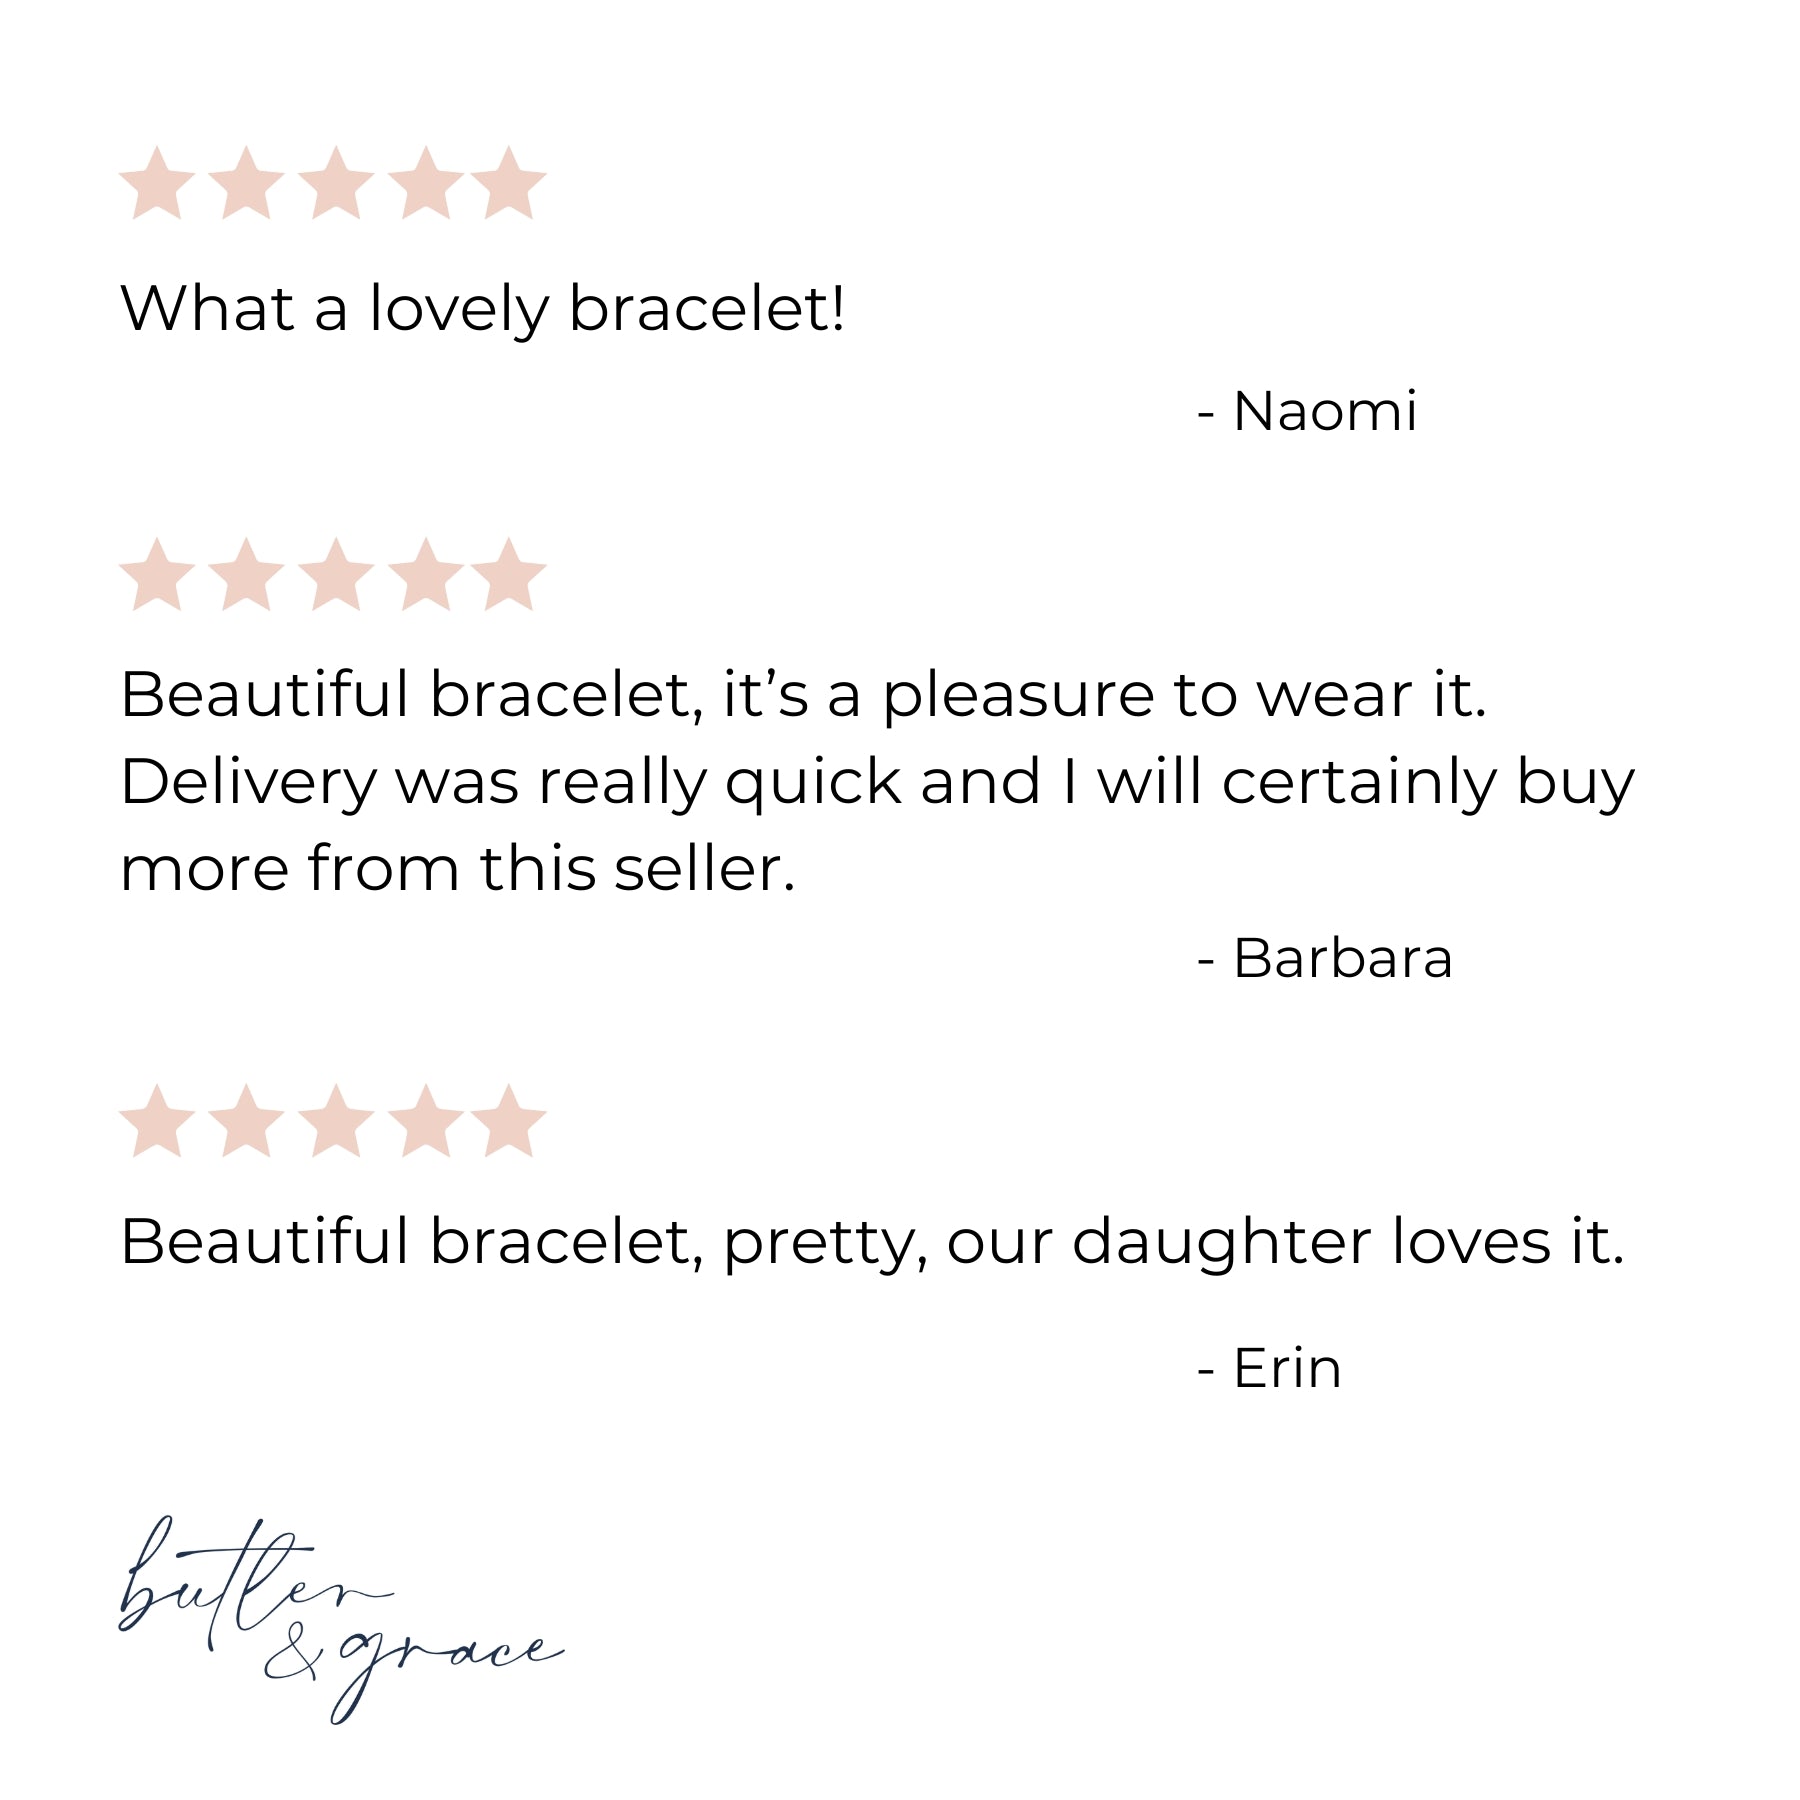 personalised aqua name bracelet review uk